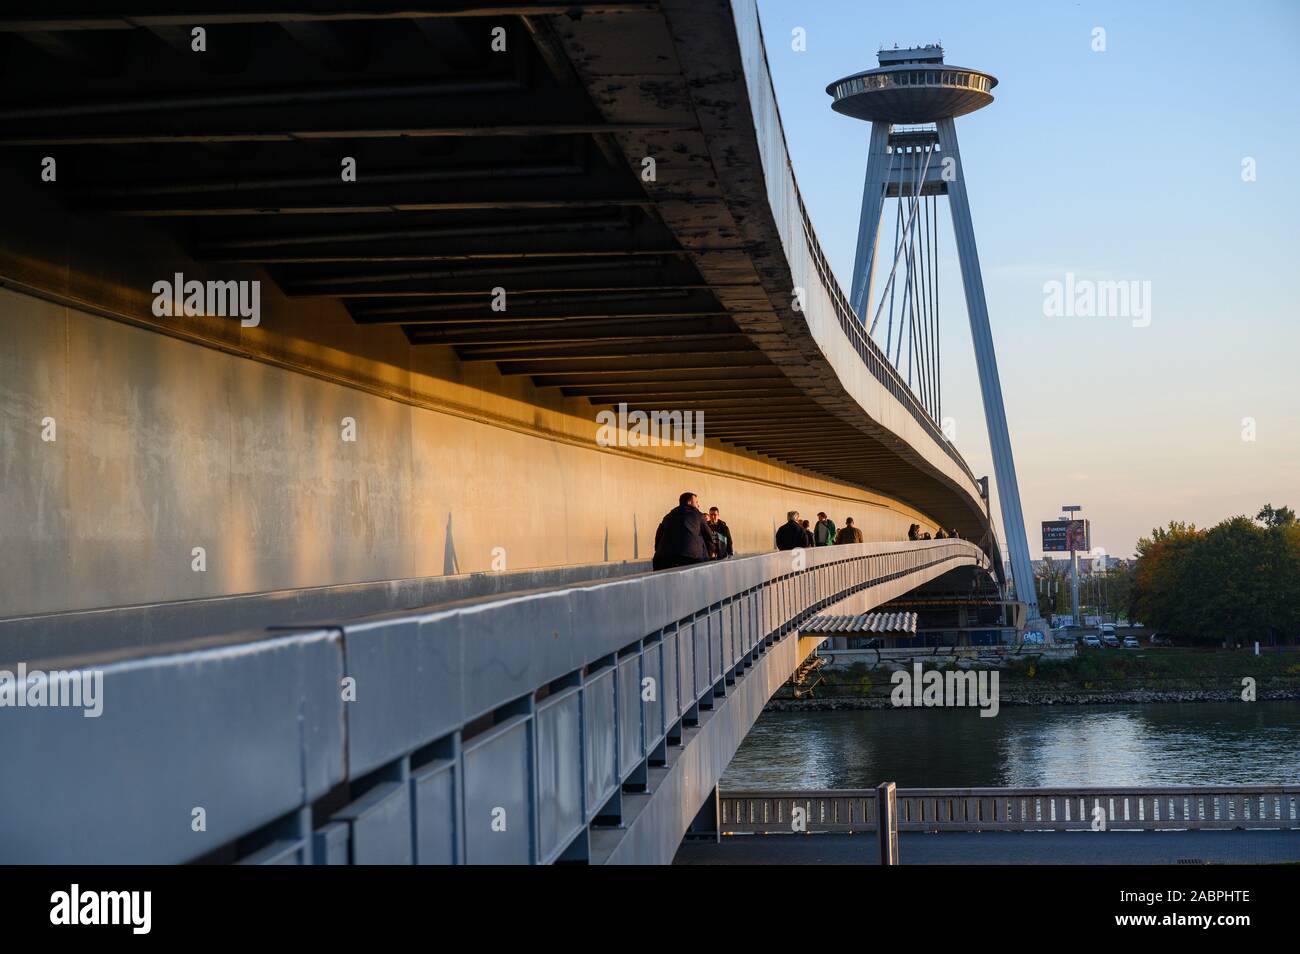 Bratislava, Slovakia. 2019/10/21. The SNP bridge spanning the river Danube in Bratislava. SNP is a Slovak abbreviation for Slovak National Uprising. Stock Photo